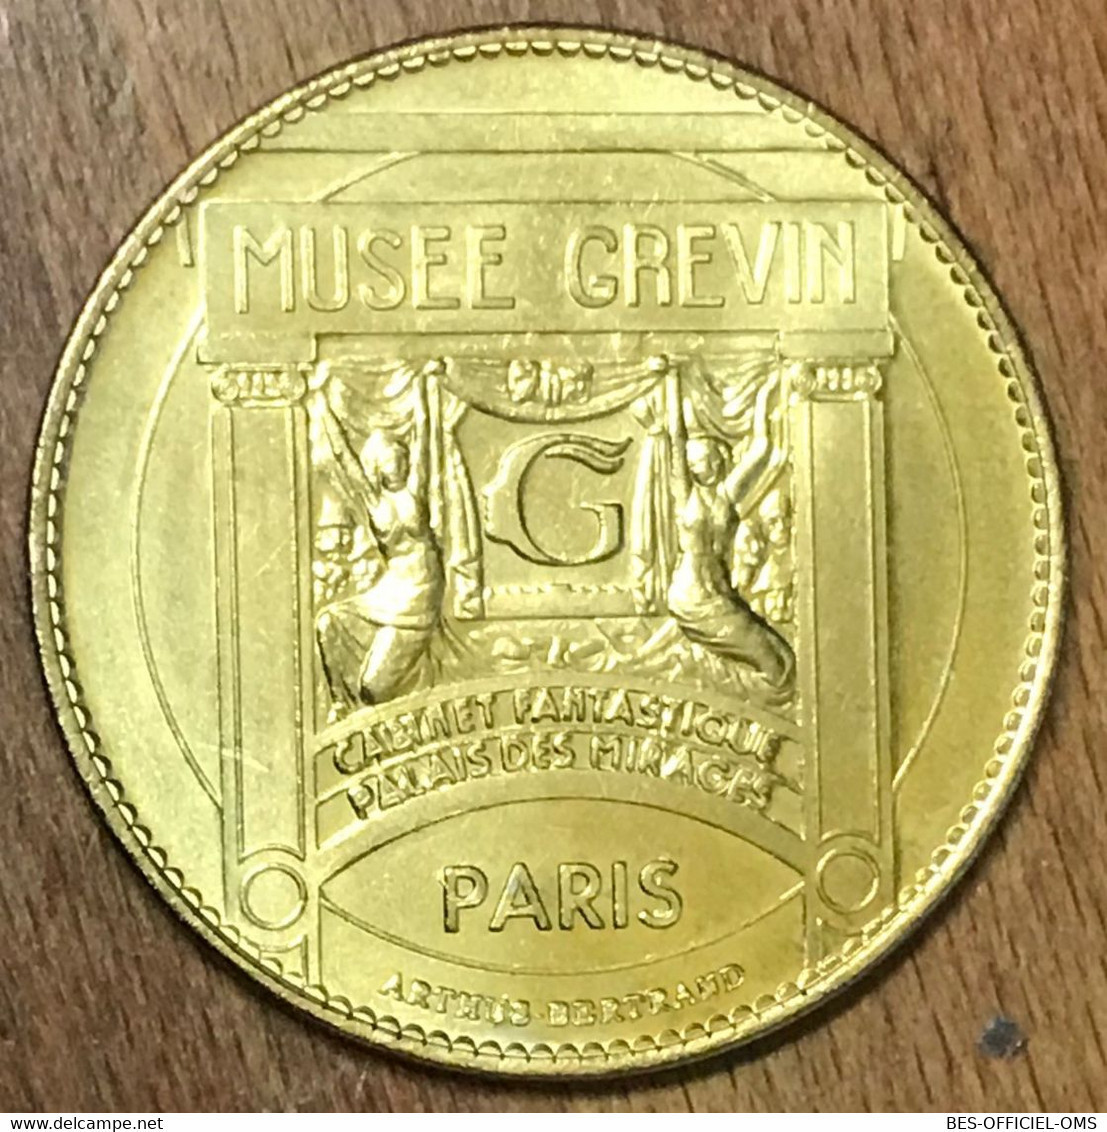 75009 MICHAEL JACKSON PARIS MUSÉE GRÉVIN AB MEDAILLE ARTHUS-BERTRAND JETON TOURISTIQUE MEDALS COINS TOKENS - Ohne Datum